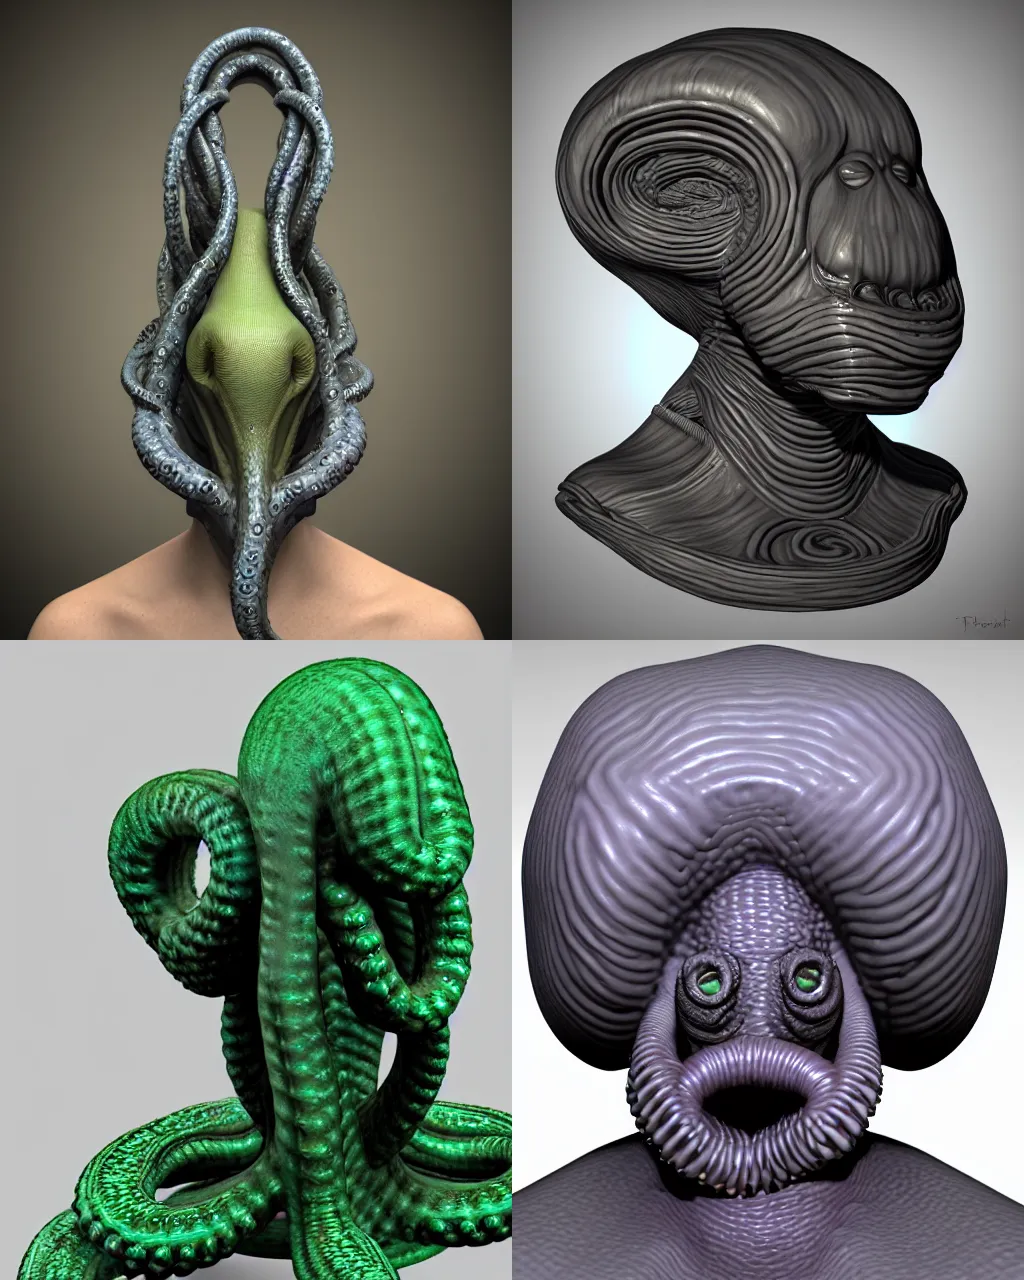 Prompt: surreal portrait tentacle alien, 3 d bust